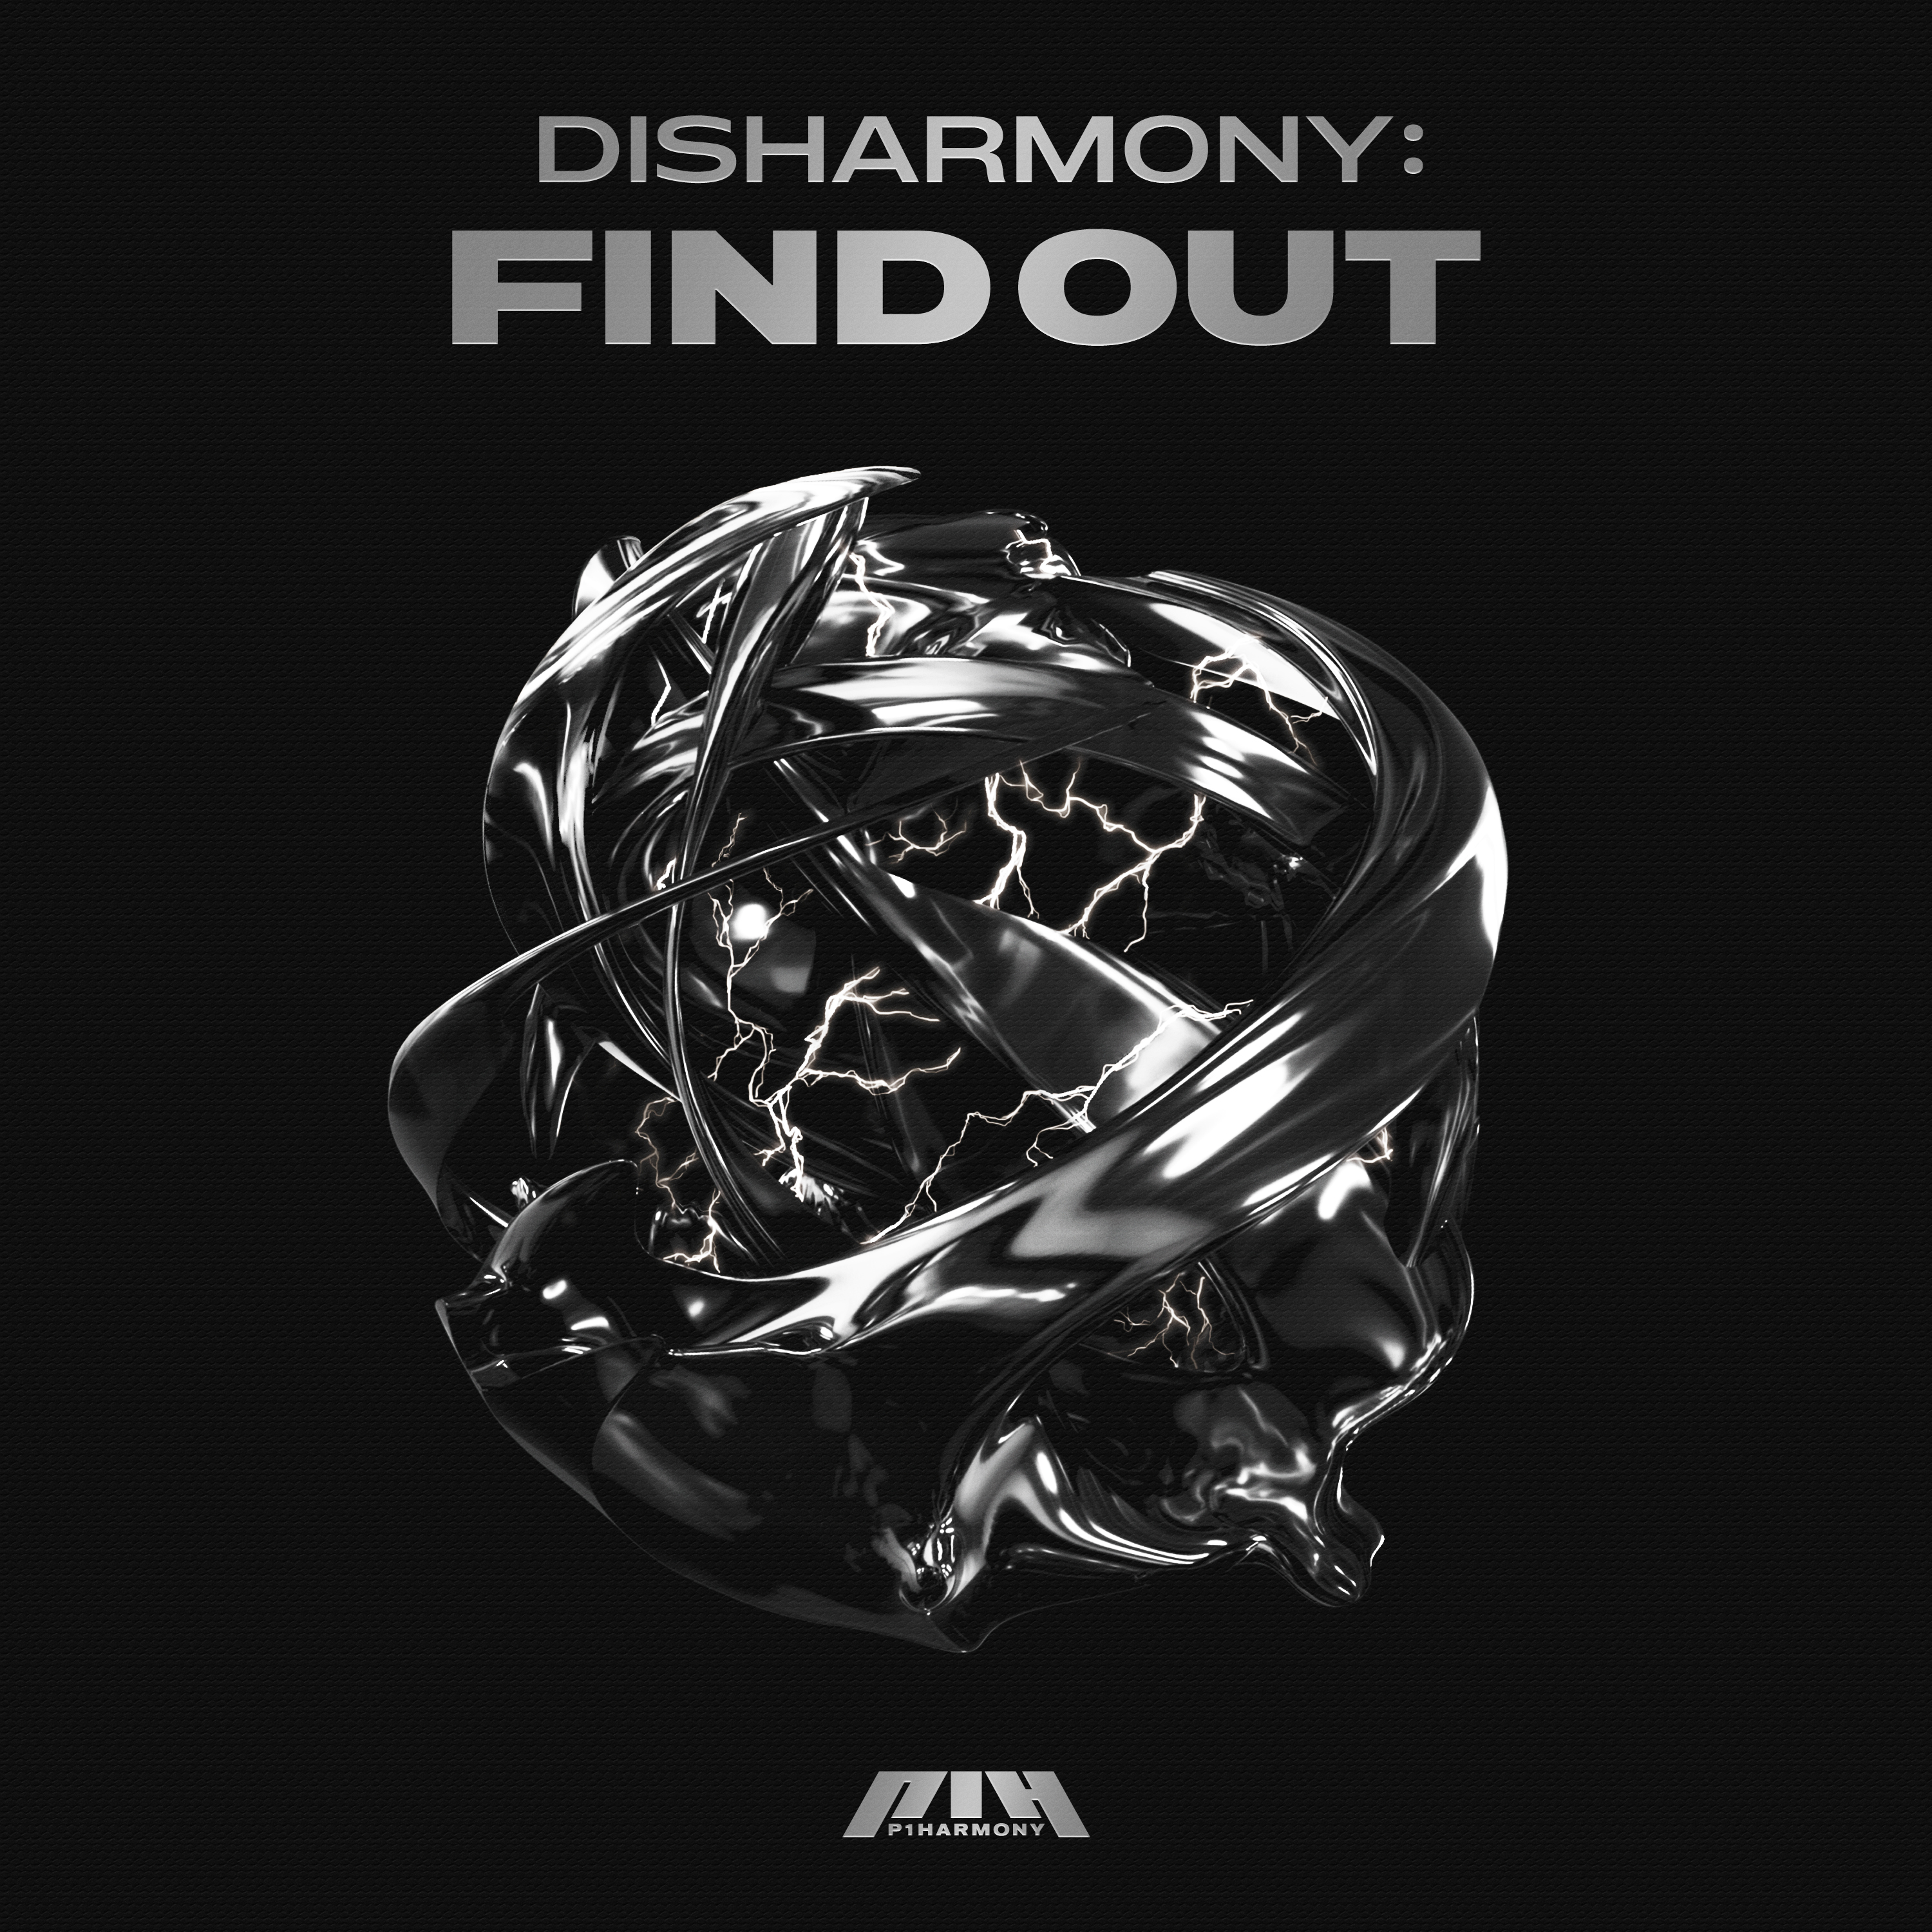 P1 harmony killin it. P1harmony album. P1harmony альбомы. P1harmony Disharmony find out. P1 Harmony find out.